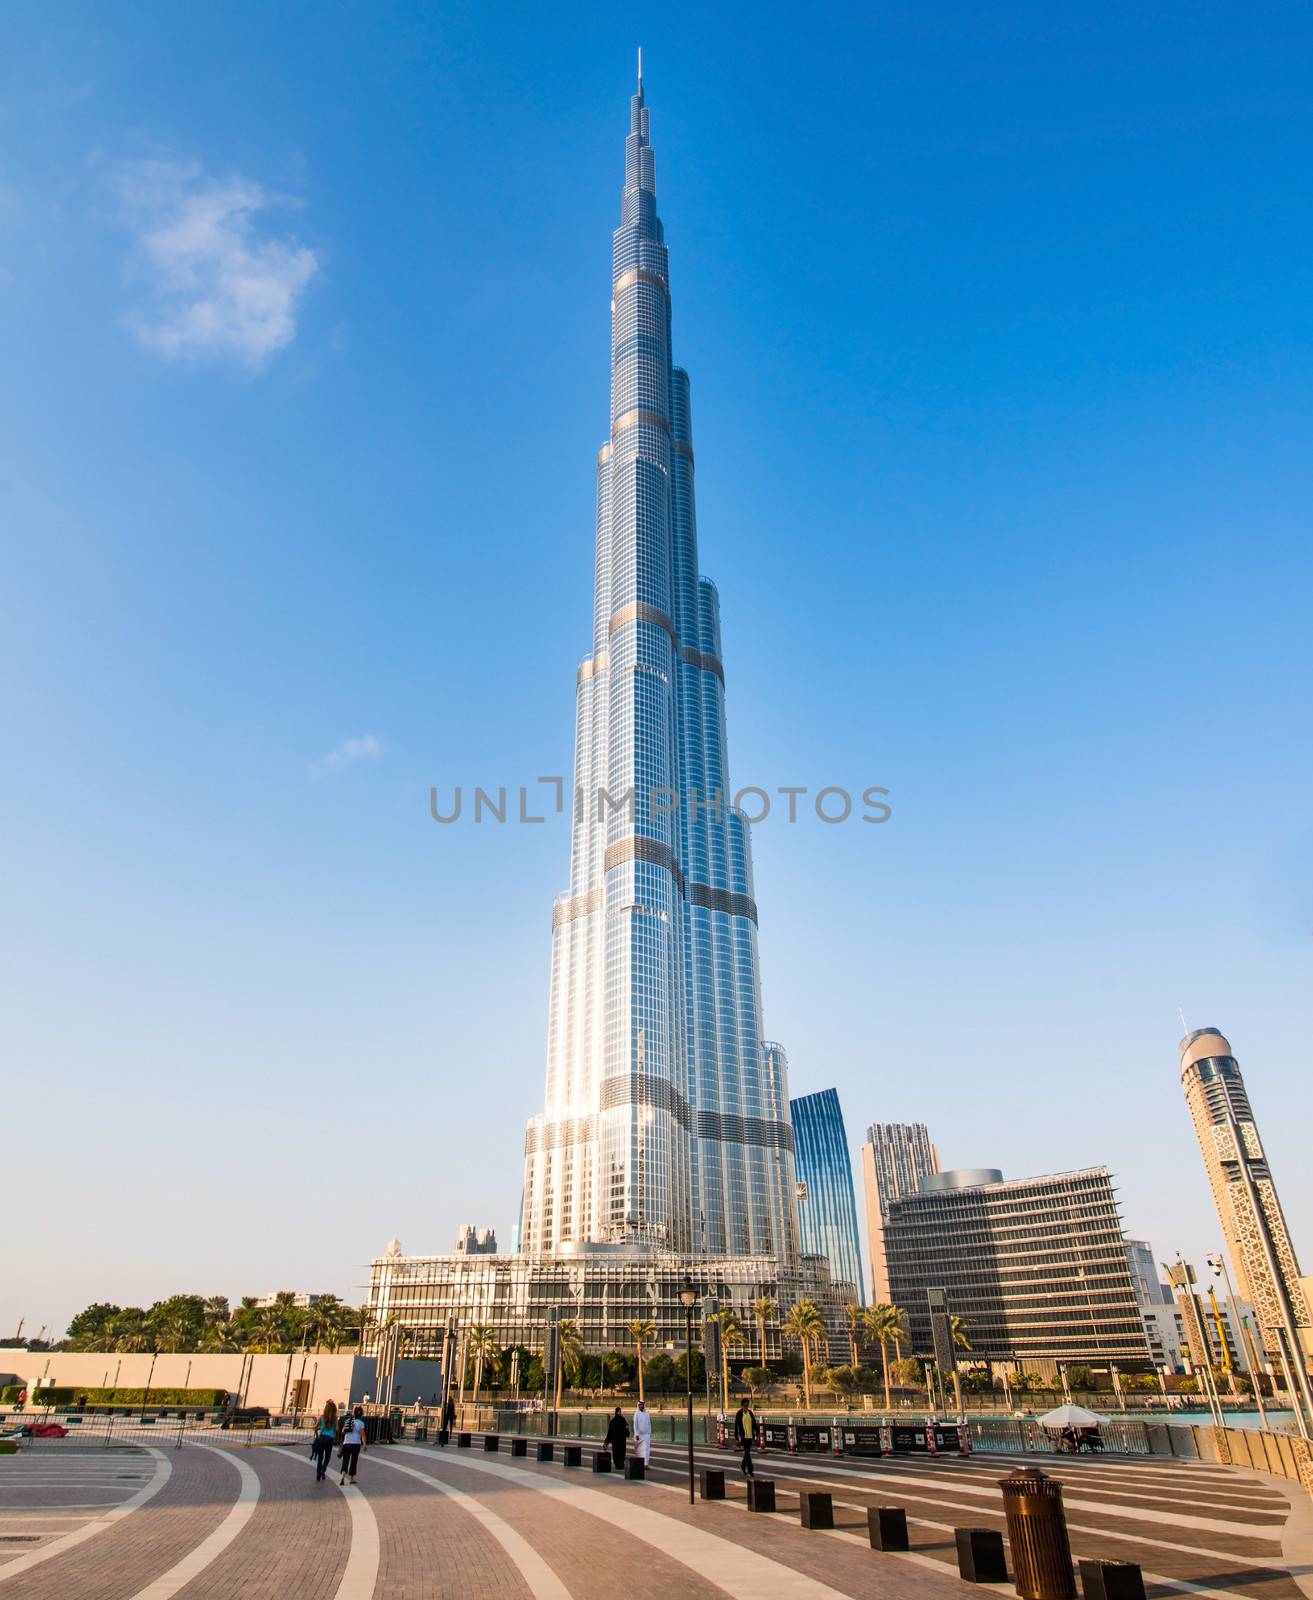 DUBAI, UAE - DECEMBER 11: Burj Khalifa on December 11, 2013 in Dubai, UAE. Burj Khalifa is currently the tallest building in the world, at 829.84 m (2,723 ft).